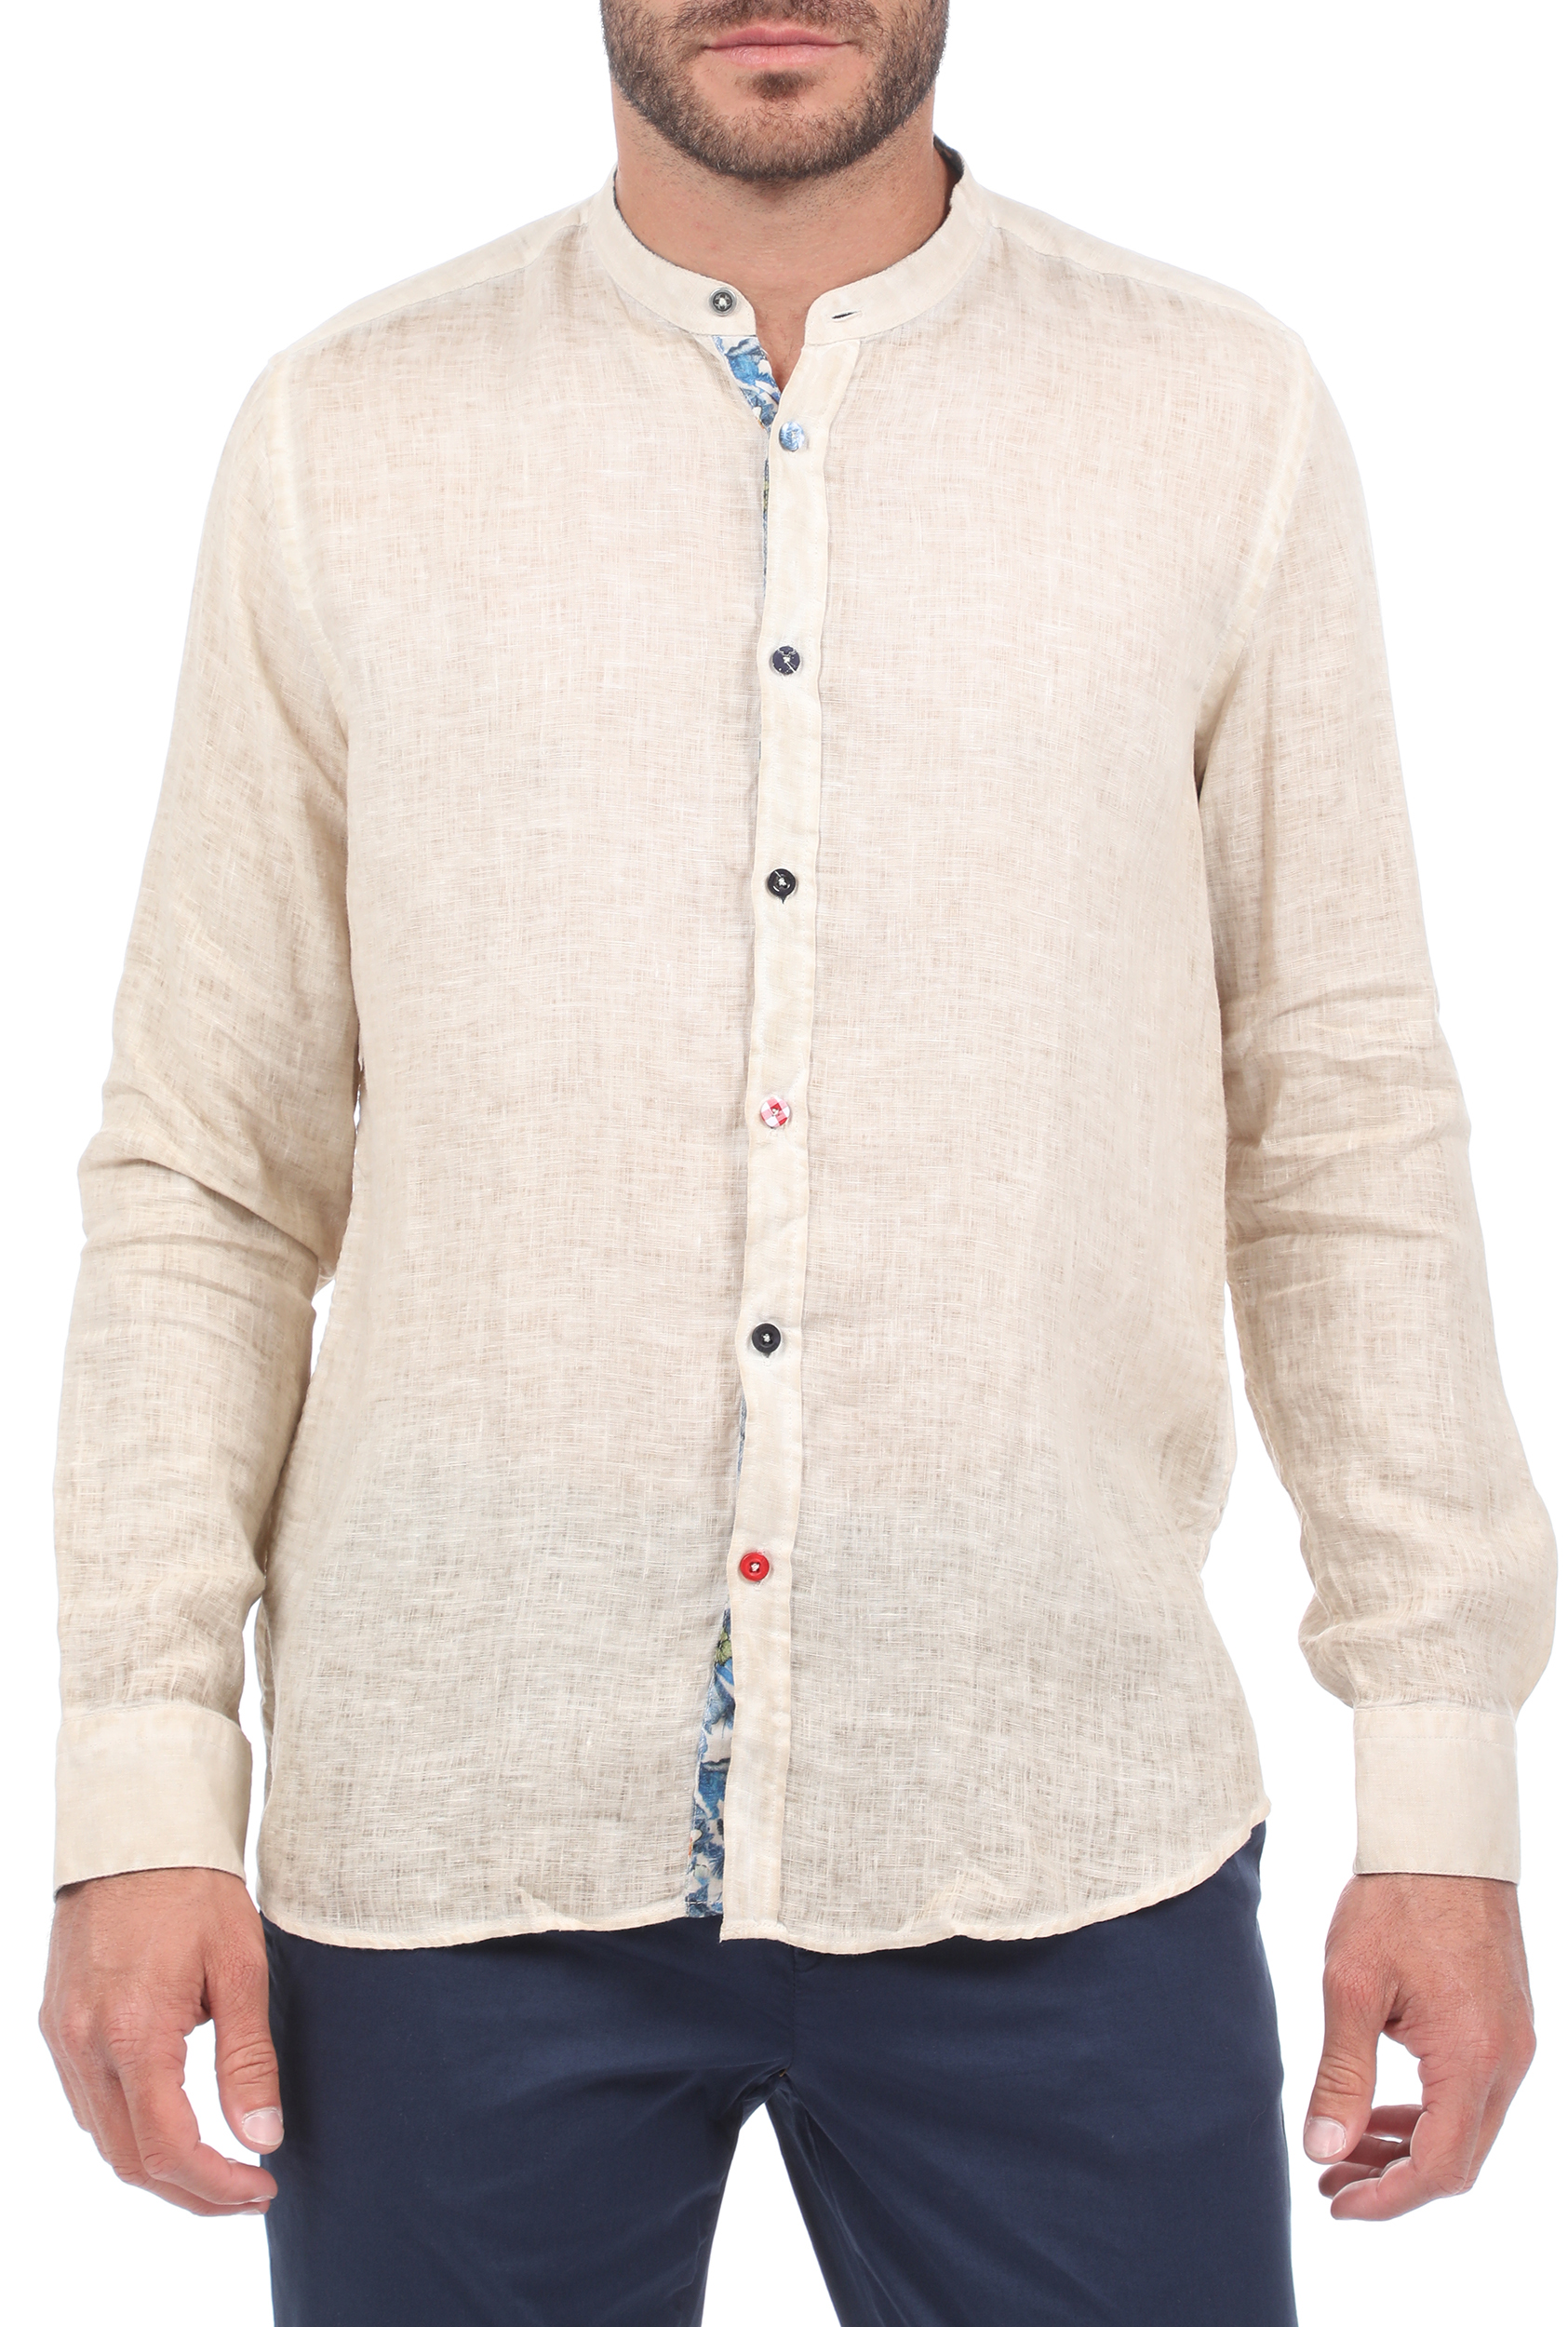 Ανδρικά/Ρούχα/Πουκάμισα/Μακρυμάνικα SSEINSE - Ανδρικό λινό πουκάμισο SSEINSE COREANA μπεζ